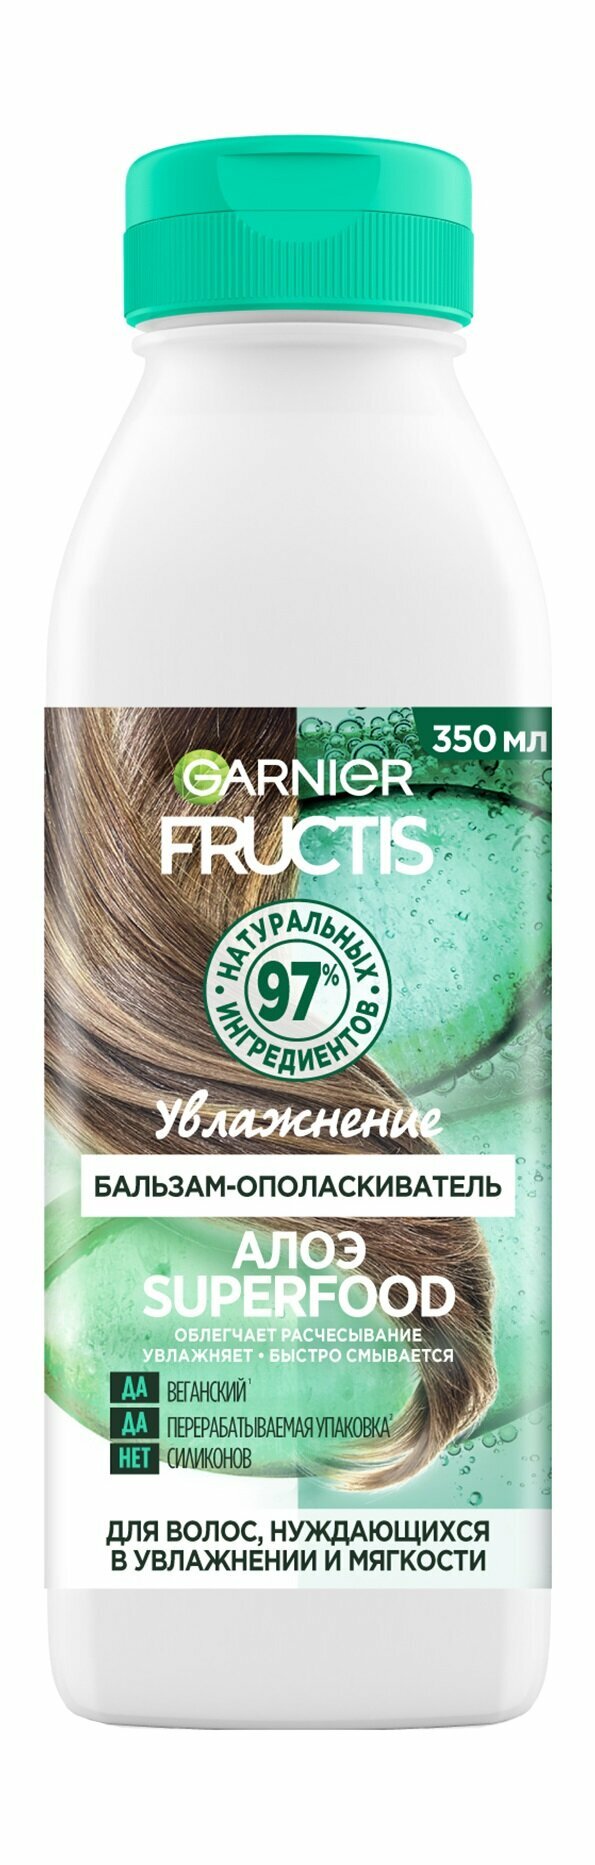 Garnier Fructis бальзам-ополаскиватель "Алоэ Superfood Увлажнение" для волос, нуждающихся в увлажнении и мягкости, 350 мл